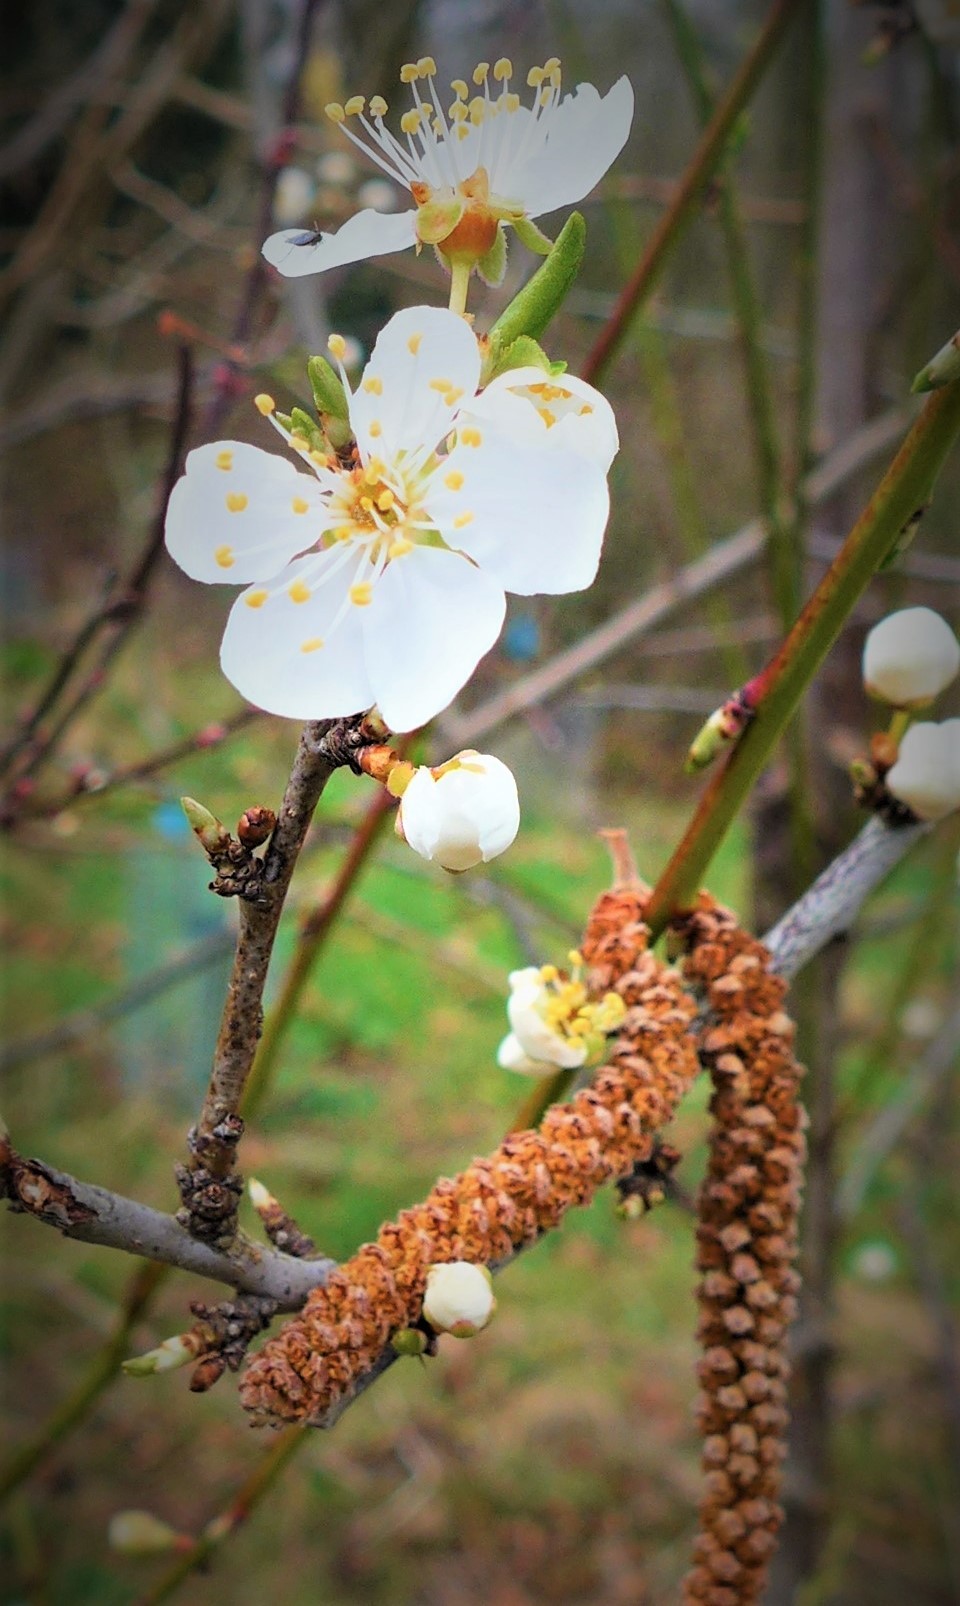 Wild apple blossom in Neston by Jane Leitch